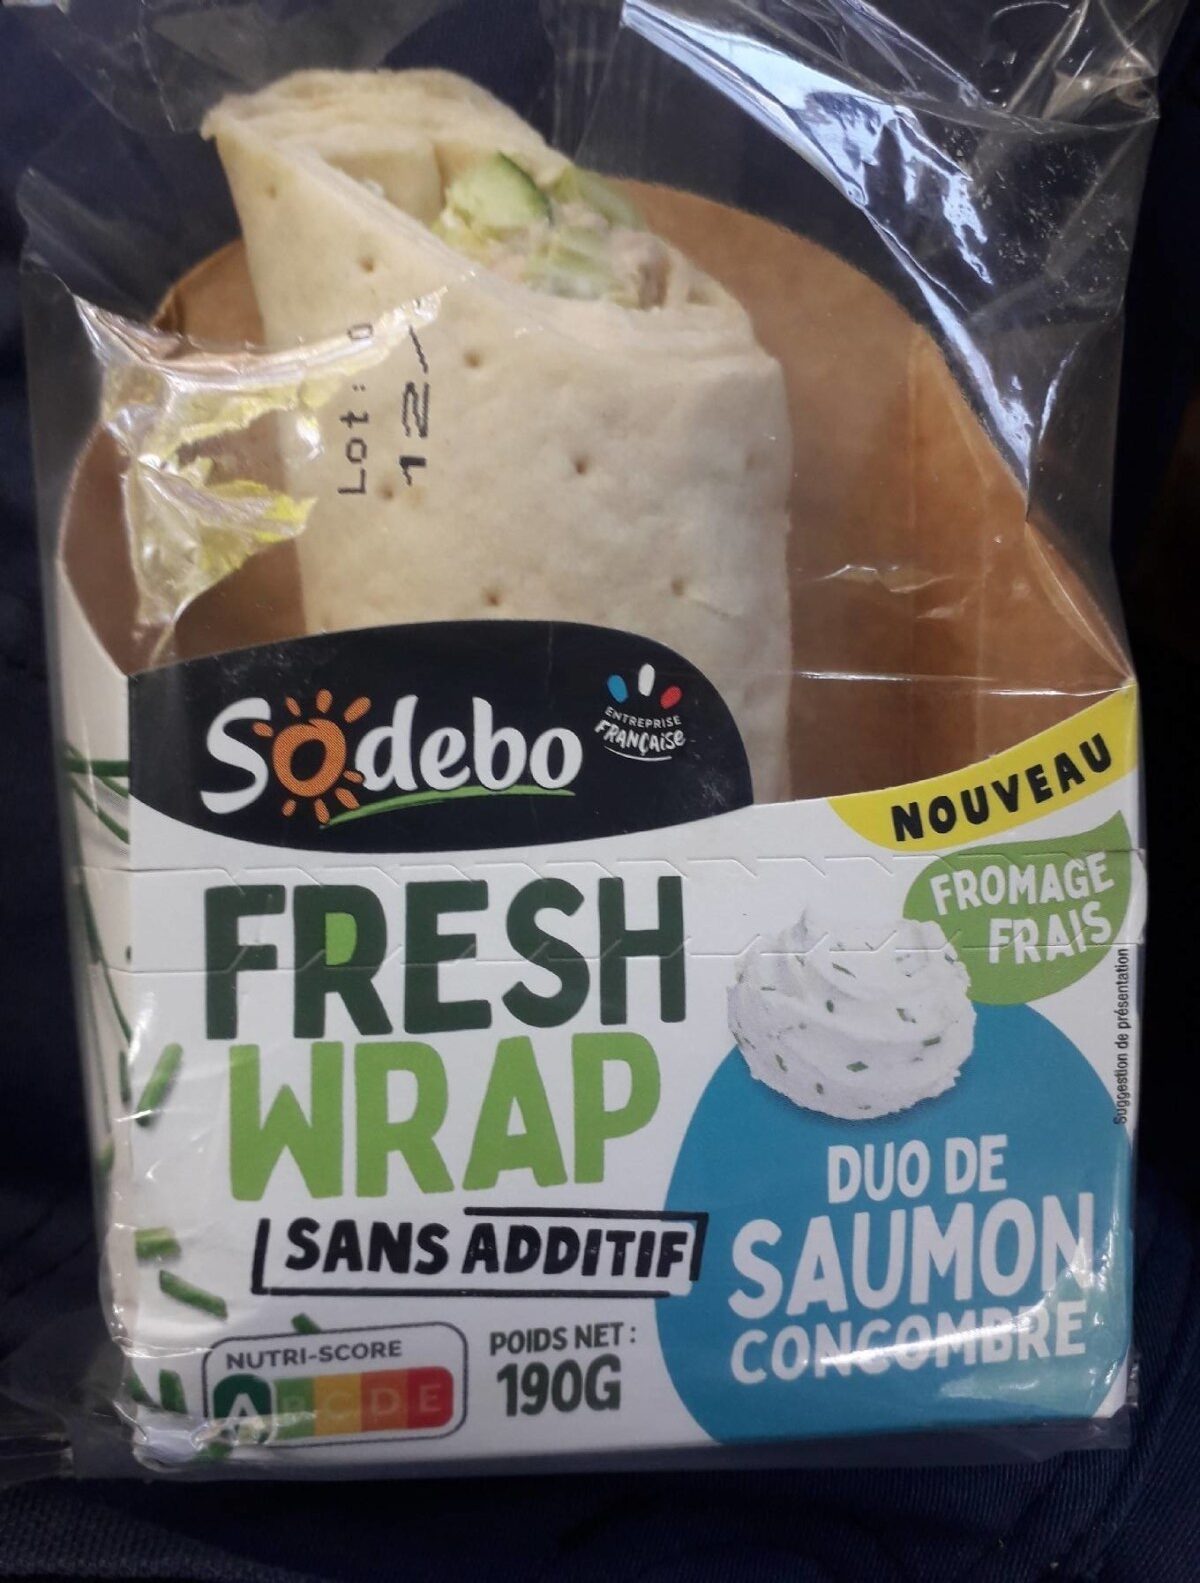 Fresh wrap - duo de saumon/concombre - Product - fr